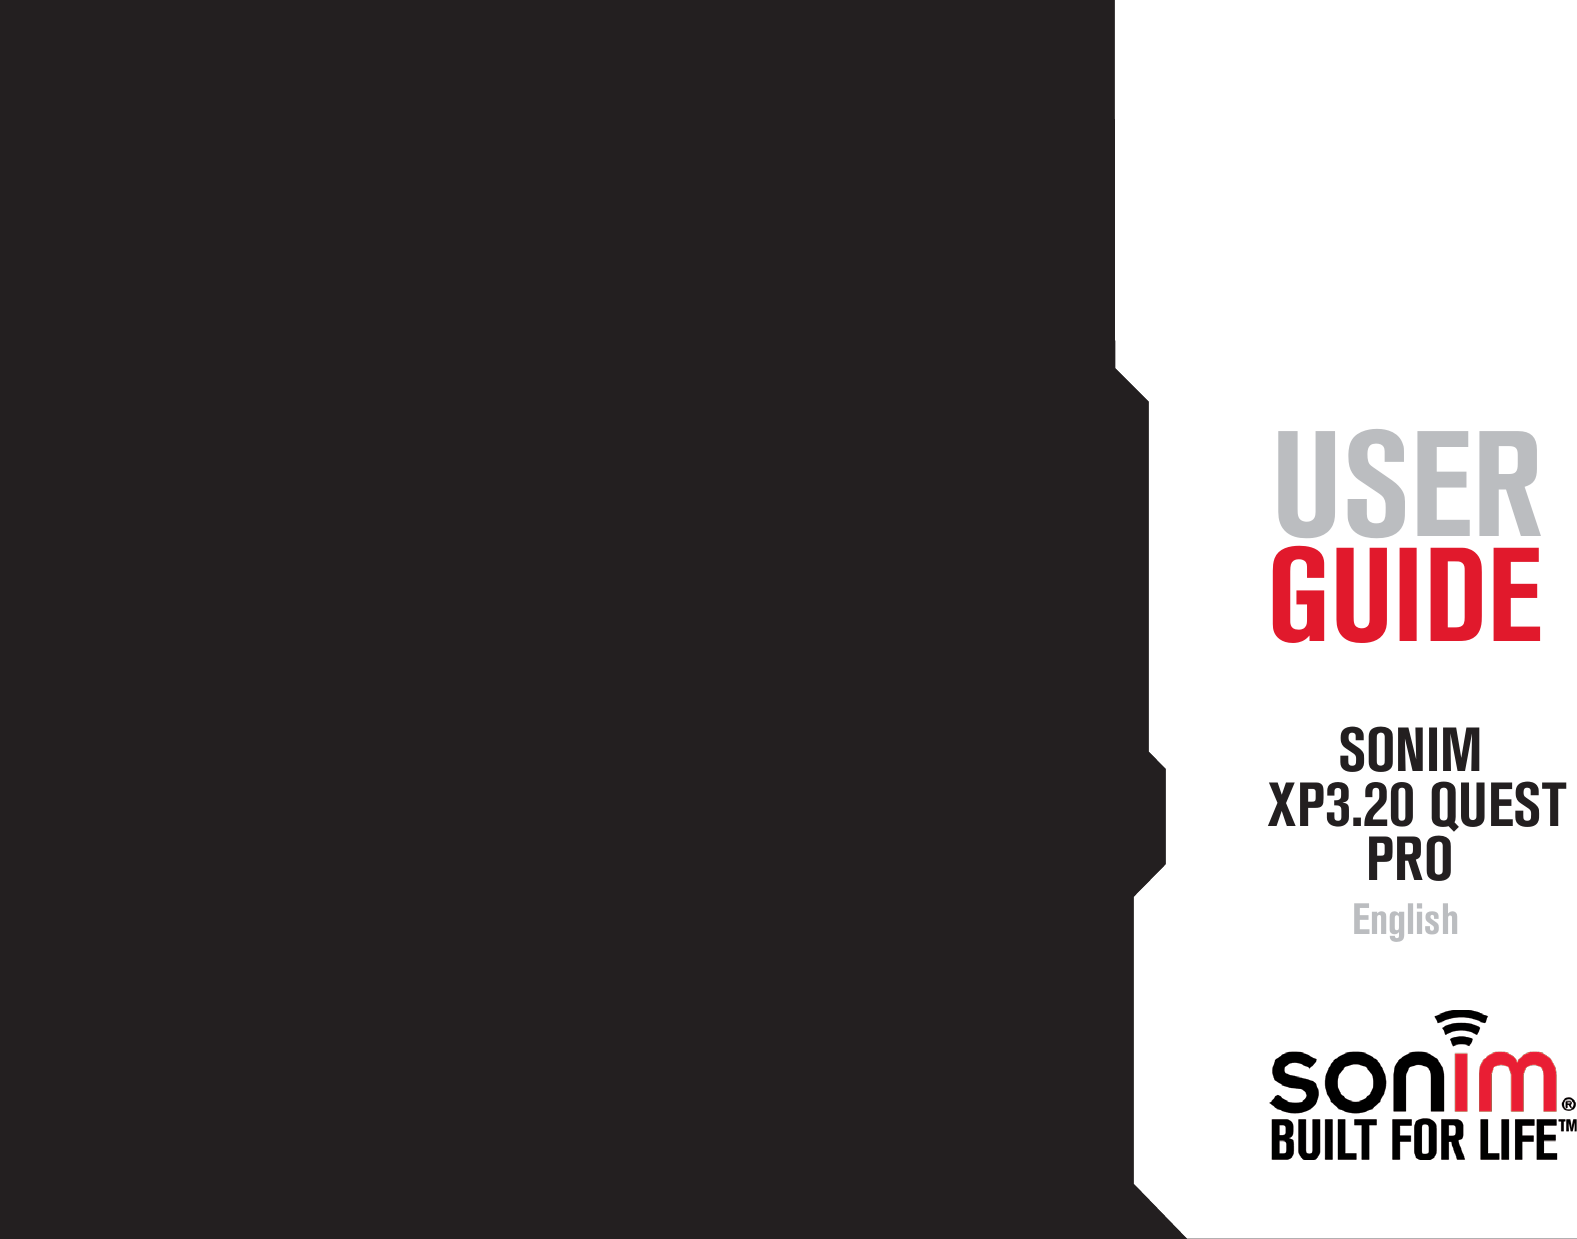 1 USER GUIDE      SONIM  XP3.20 QUEST        PRO       English